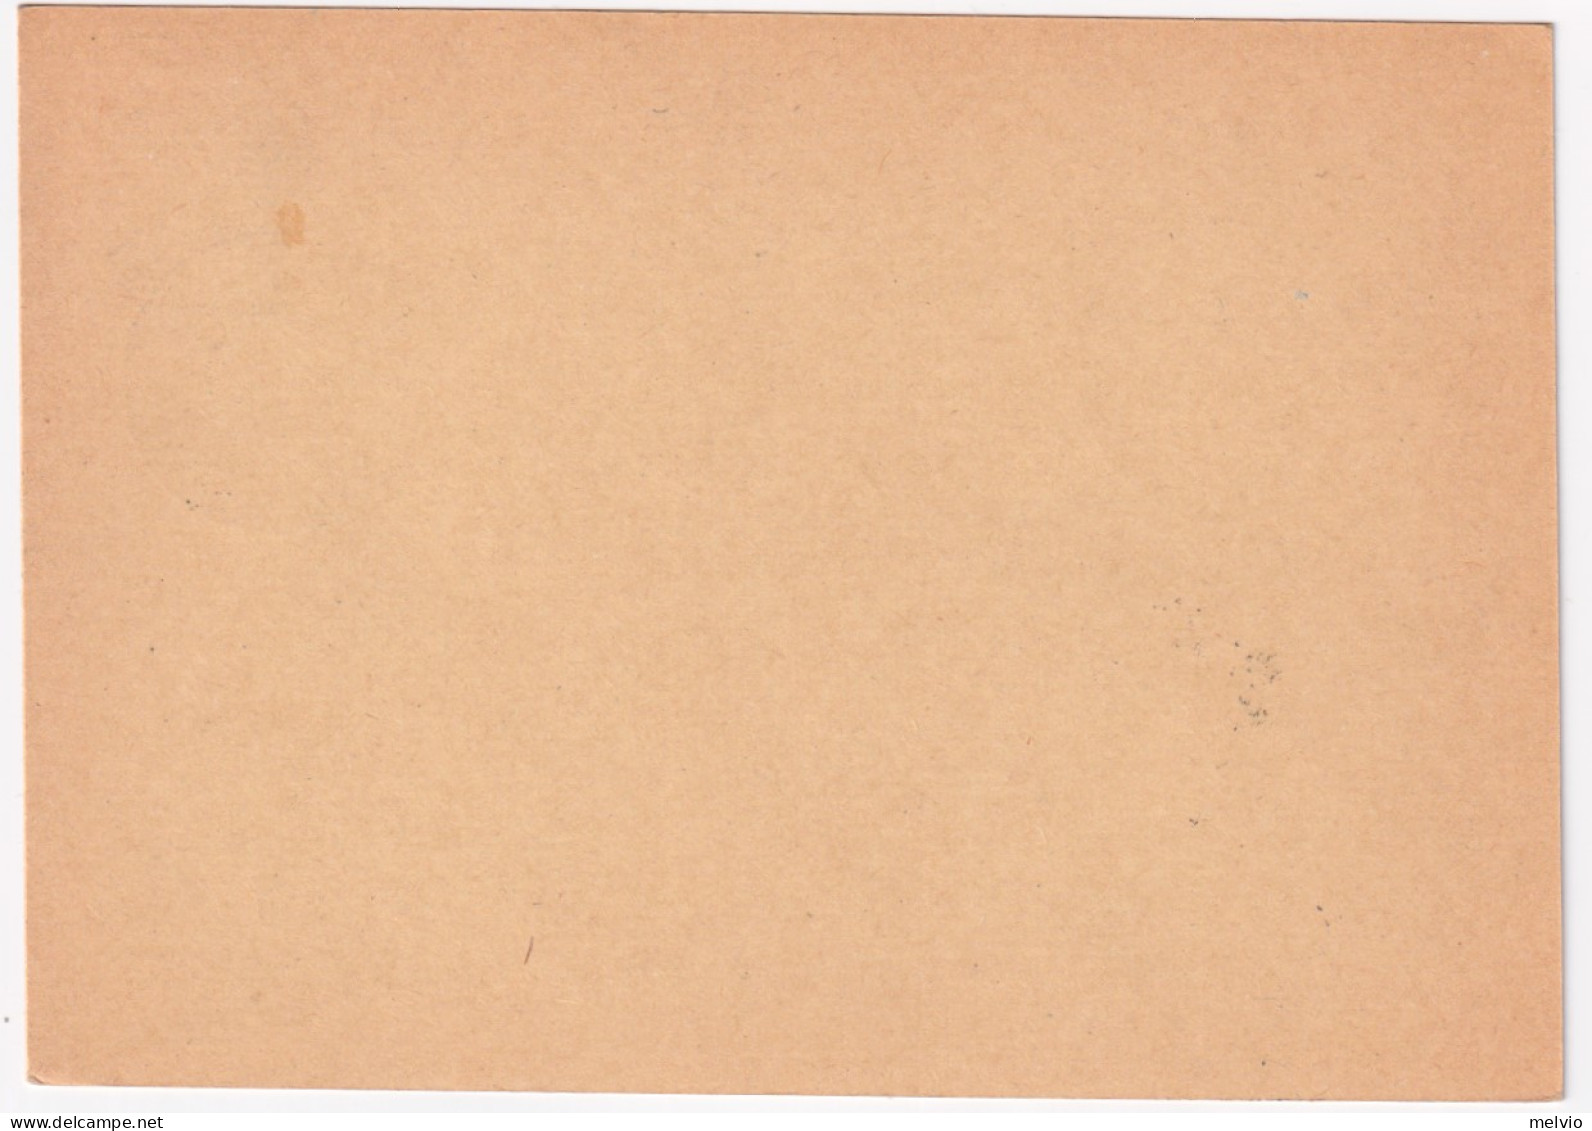 1956-ROMA II^Congresso Naz. Dietetica (12.9) Annullo Speciale Su Cartolina - 1946-60: Marcophilia